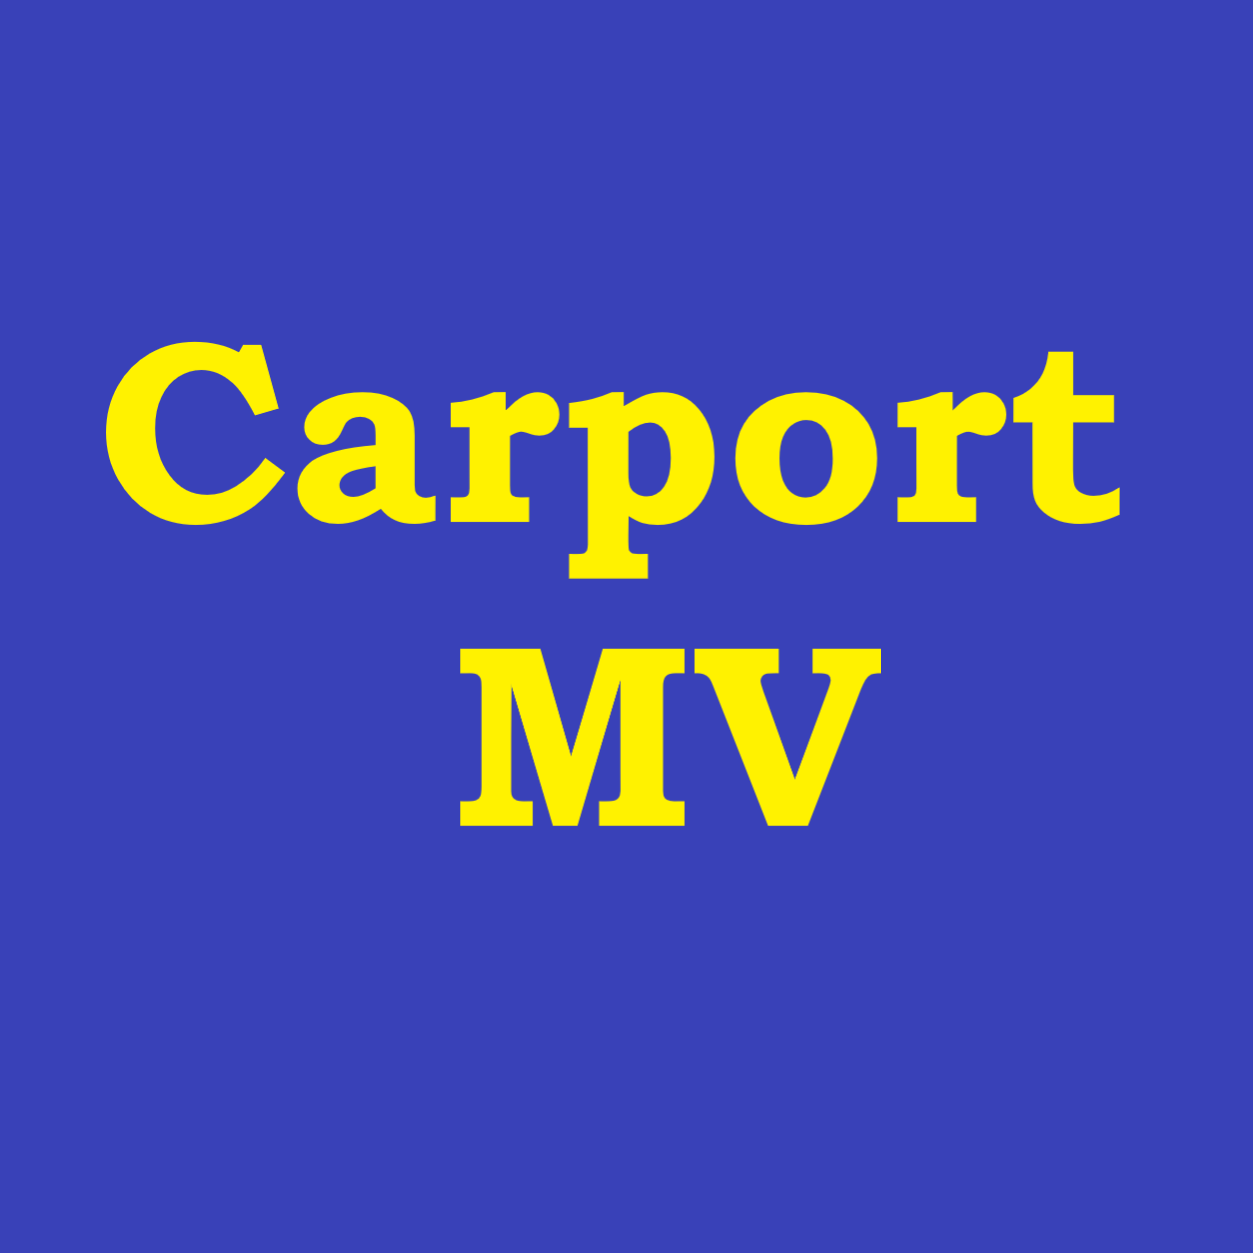 Carport MV